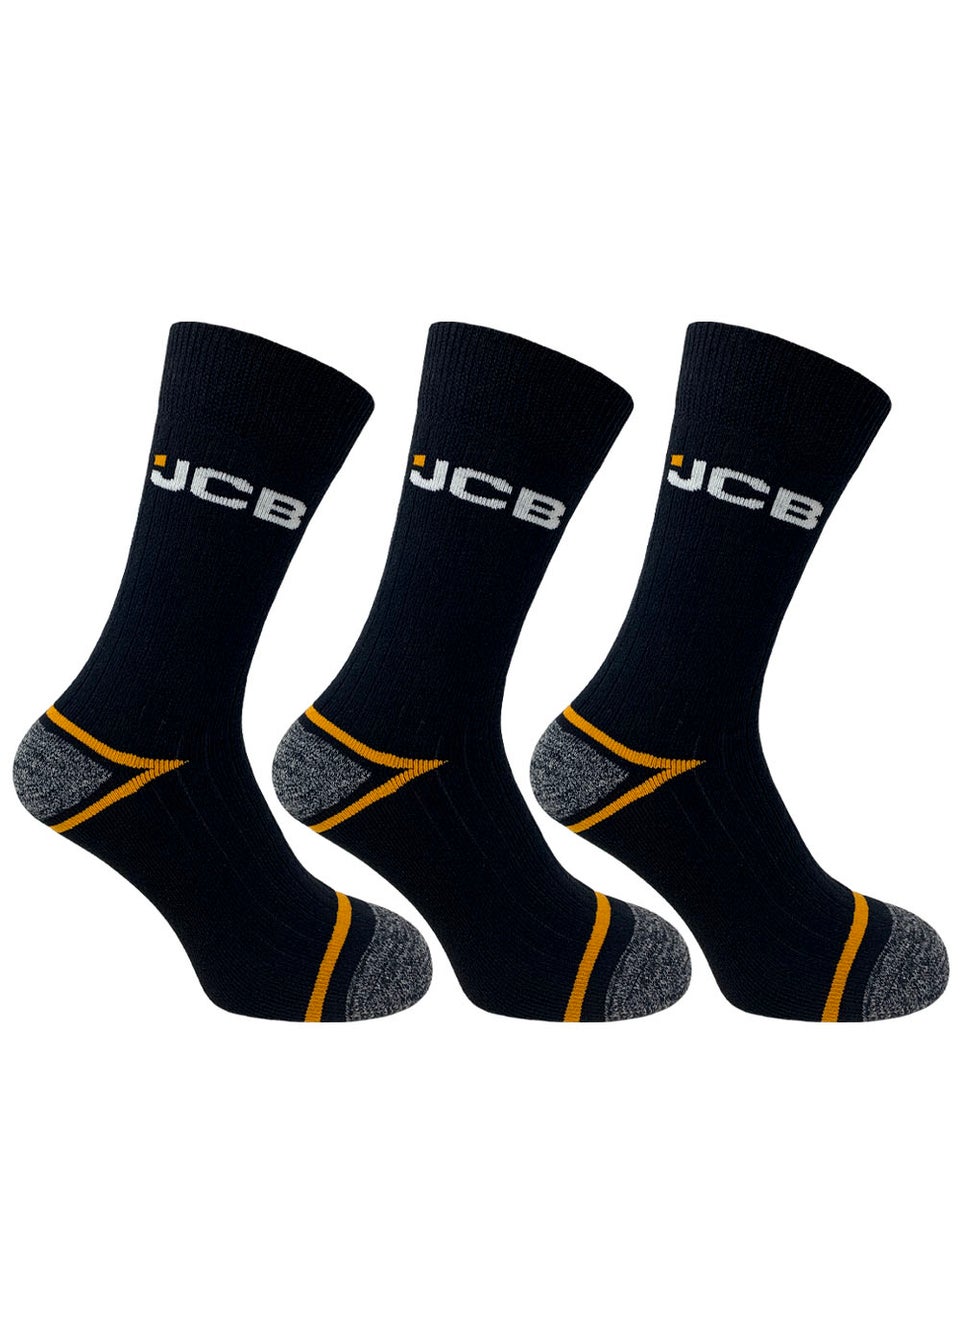 3 Pack JCB Black Work Socks